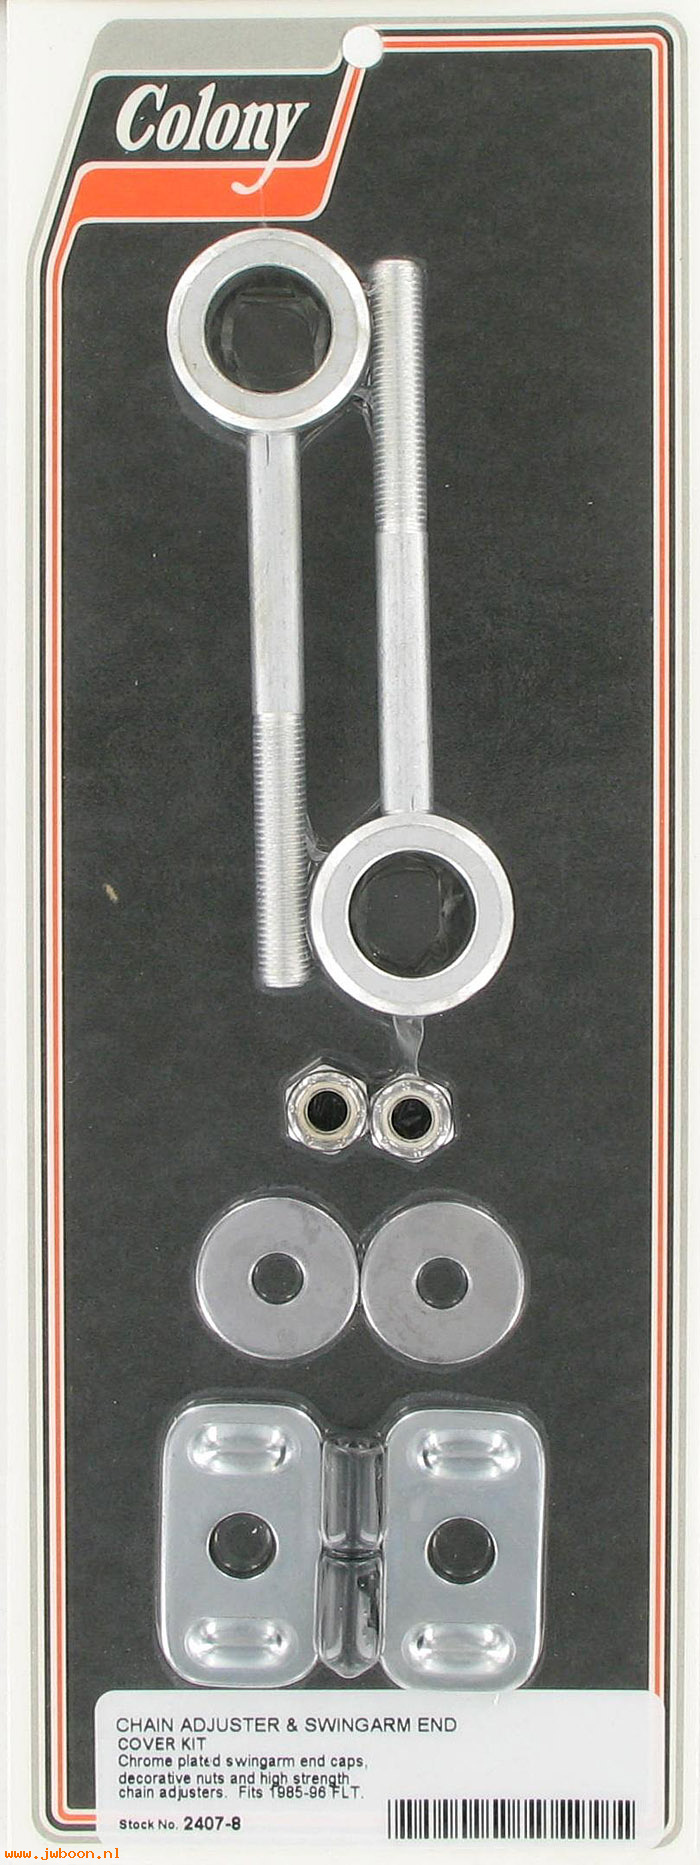 C 2407-8 (): Chain adj. & swingarm end cover kit - FLT '85-'96, in stock